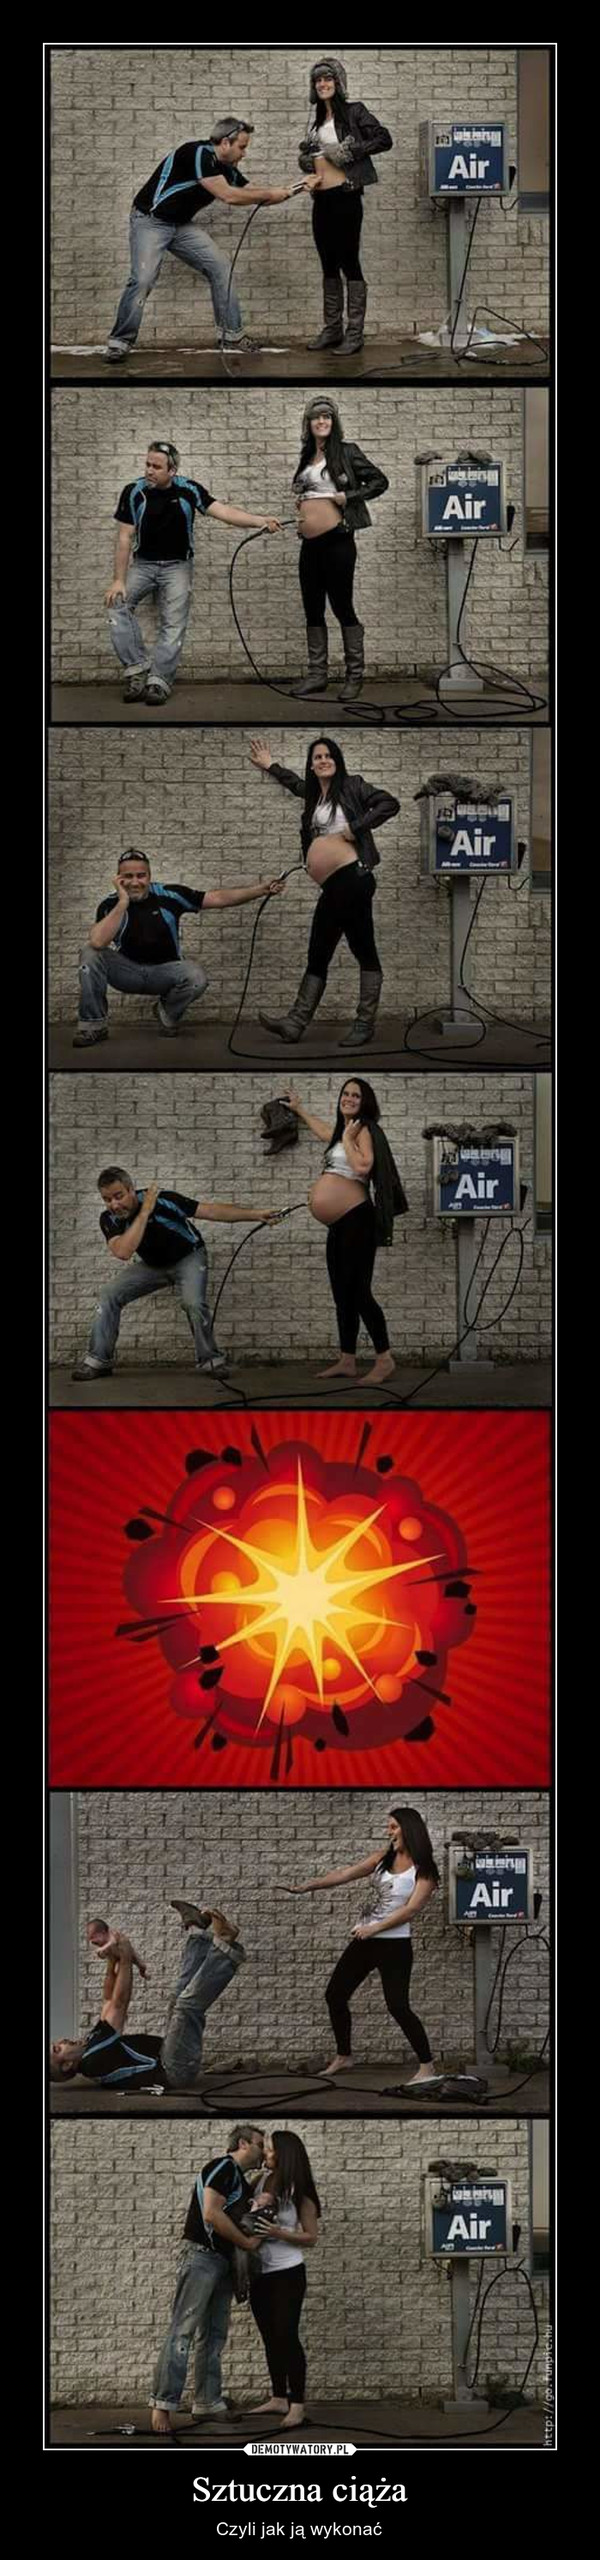 Sztuczna ciąża